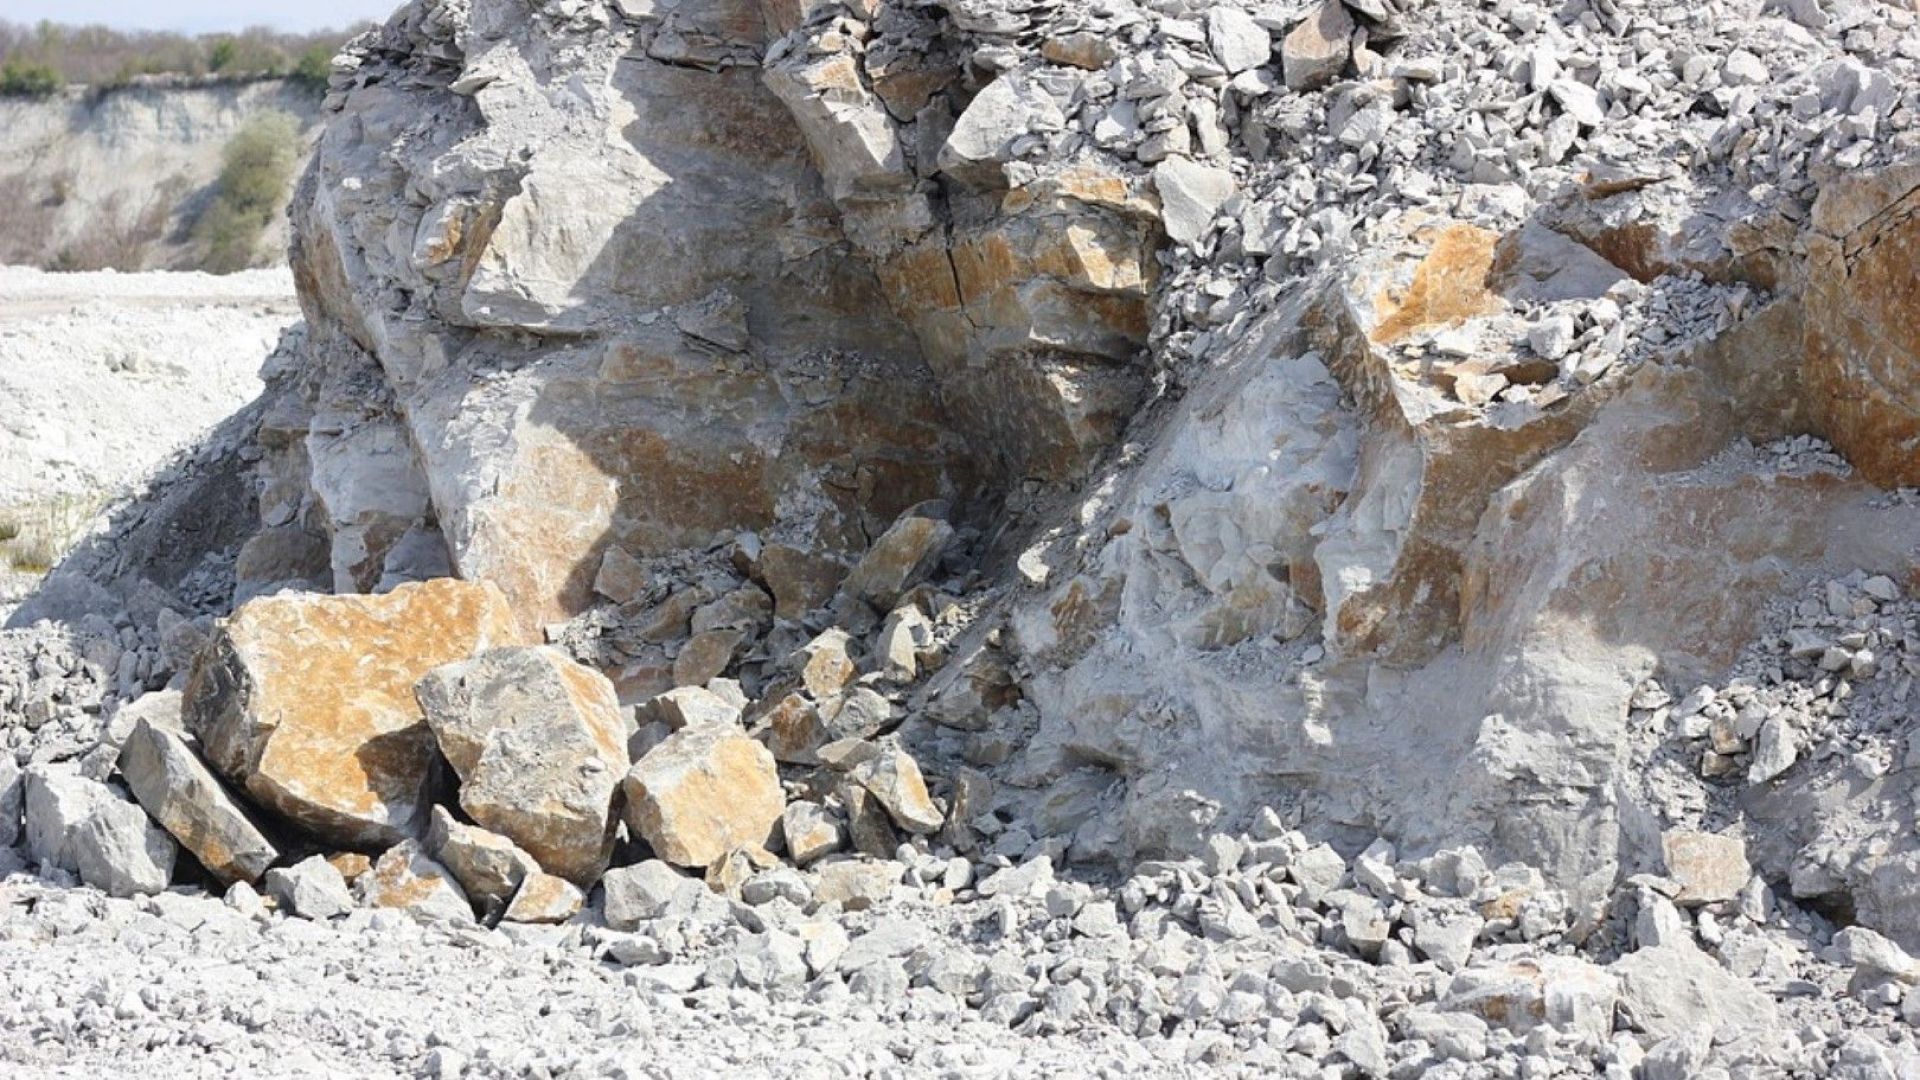 Двама работници са пострадали при злополука в каменна кариера в Монтанско